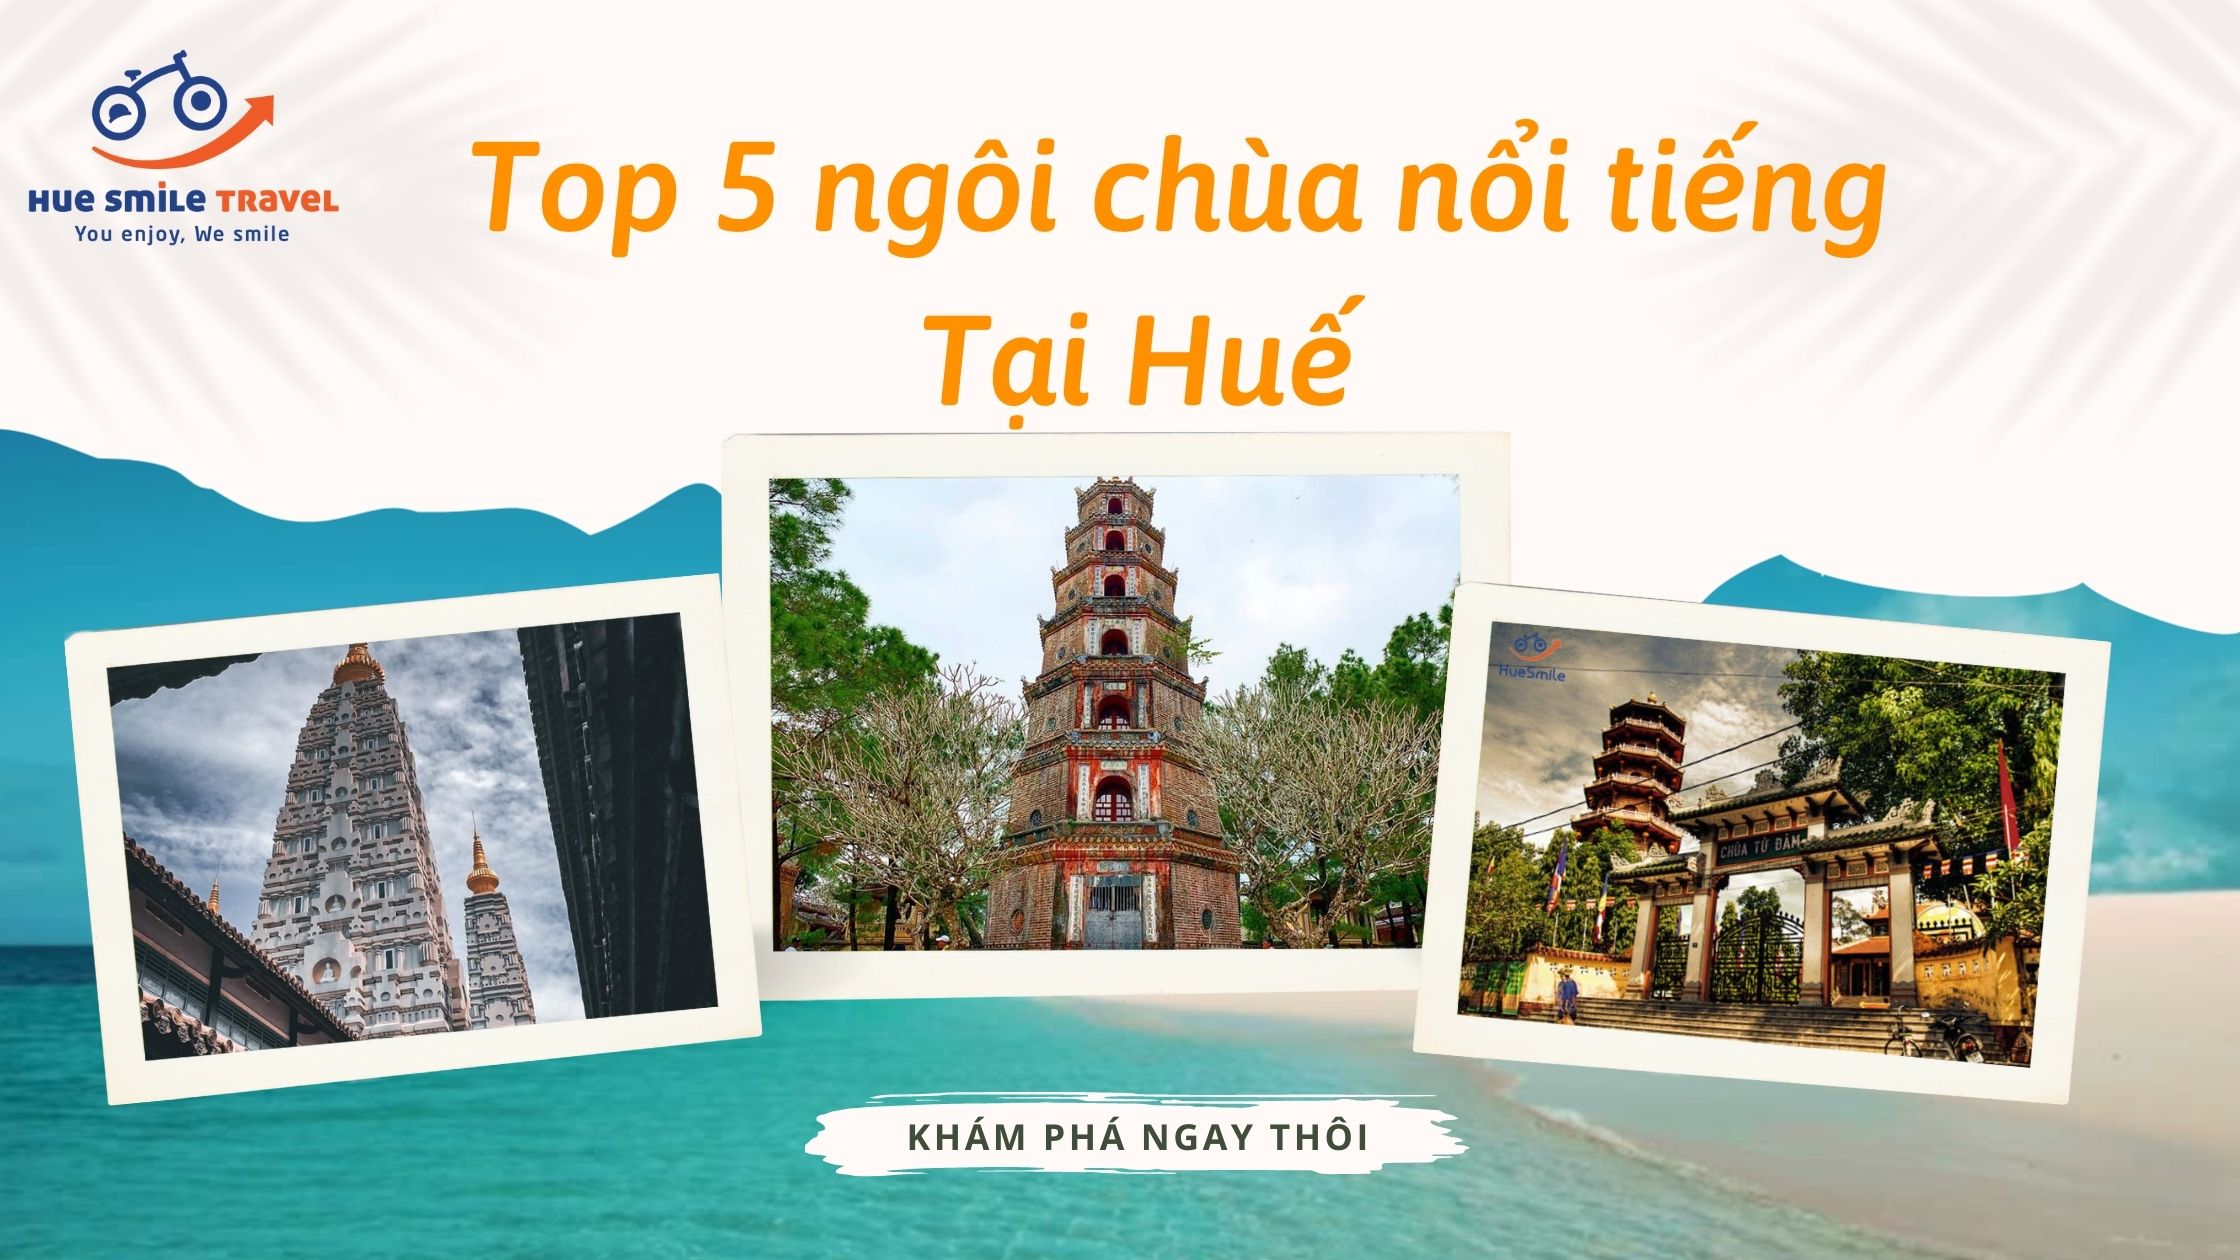 Top 5 ngôi chùa nổi tiếng ở Huế